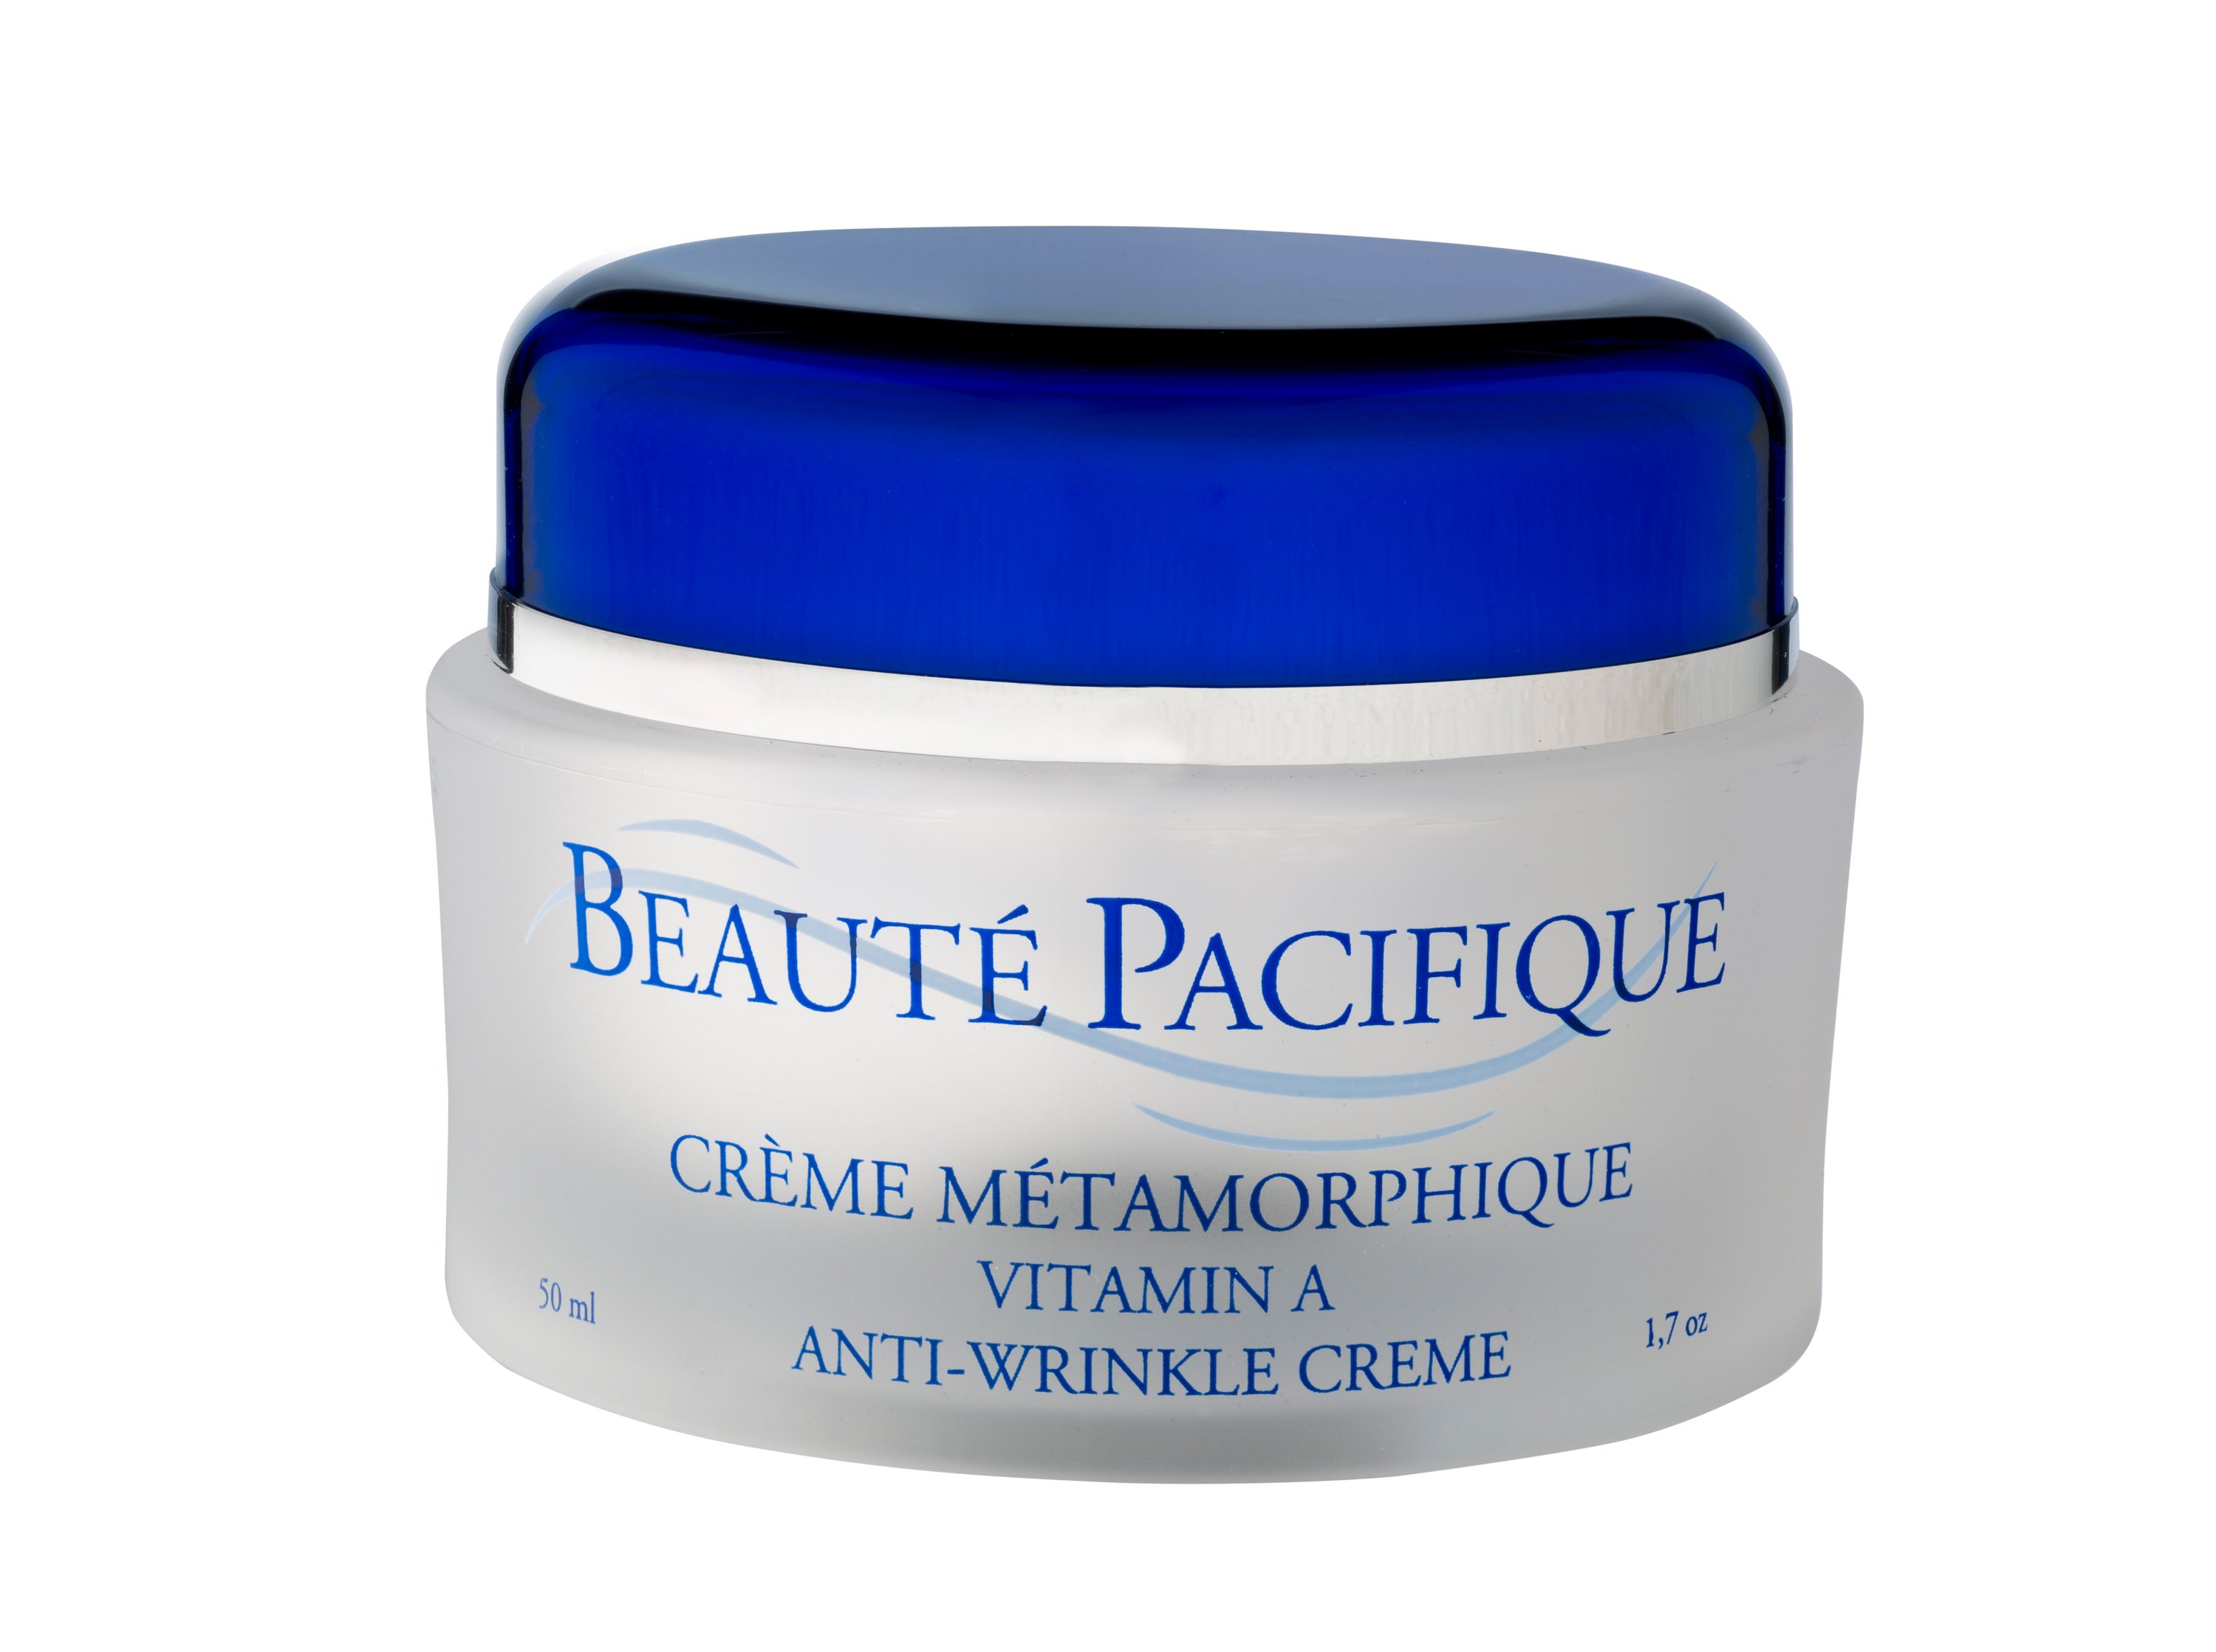 Billede af Beauté Pacifique - Créme Métamorphique A-vitamin creme til anti-age behandling 50 ml.